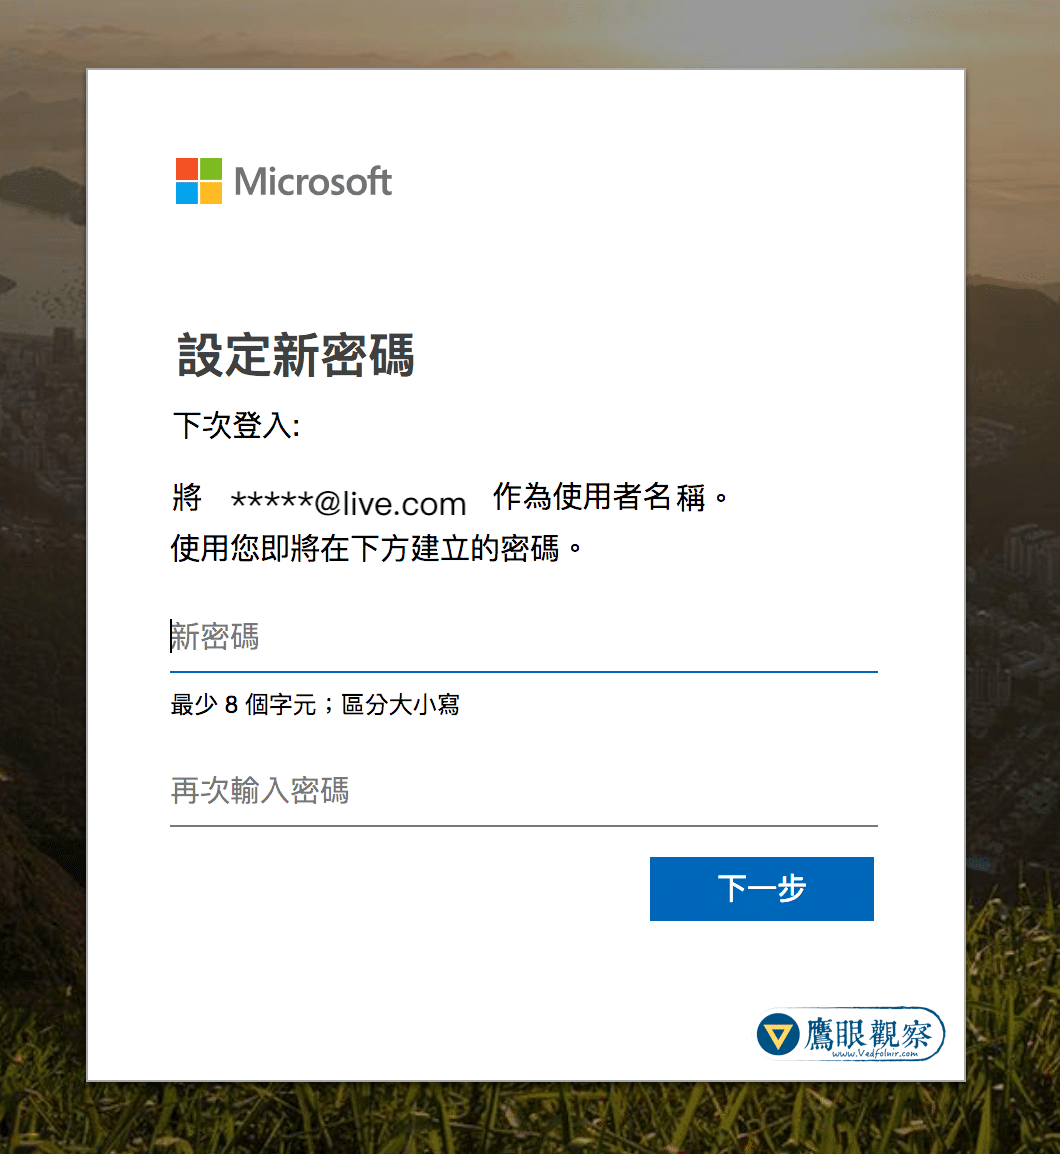 微軟 Microsoft Live 電子信箱被入侵存取、惡意破解的資訊安全防護機制與操作教學 Microsoft Live Login Reset New Passwor